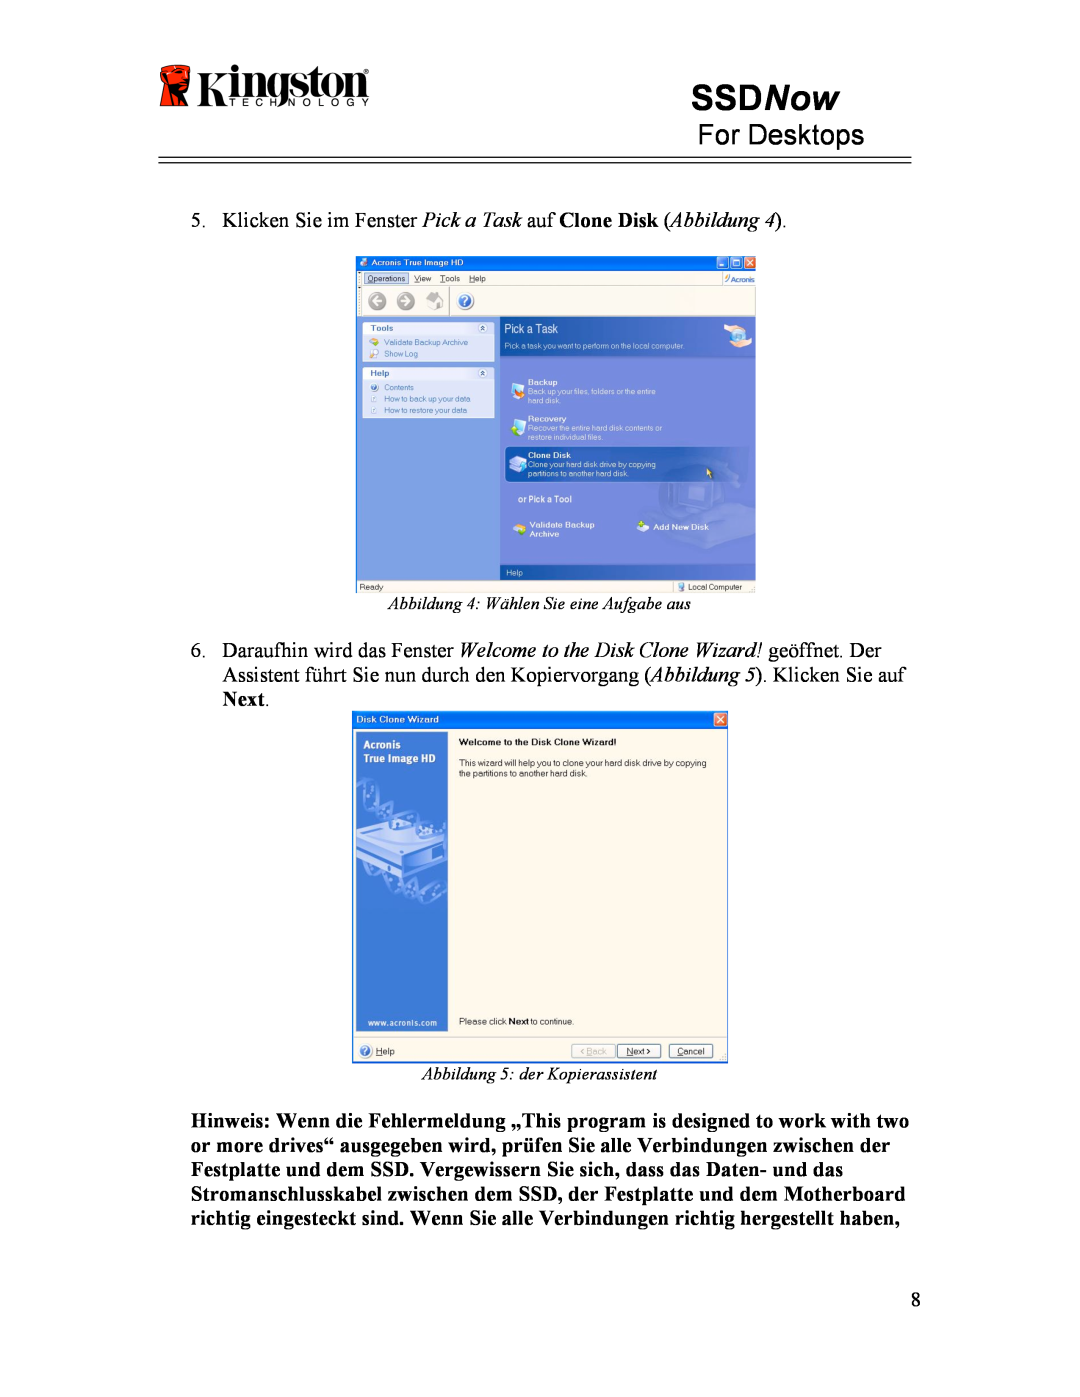 Kingston Technology 07-16-2009 manual SSDNow, For Desktops, Klicken Sie im Fenster Pick a Task auf Clone Disk Abbildung 